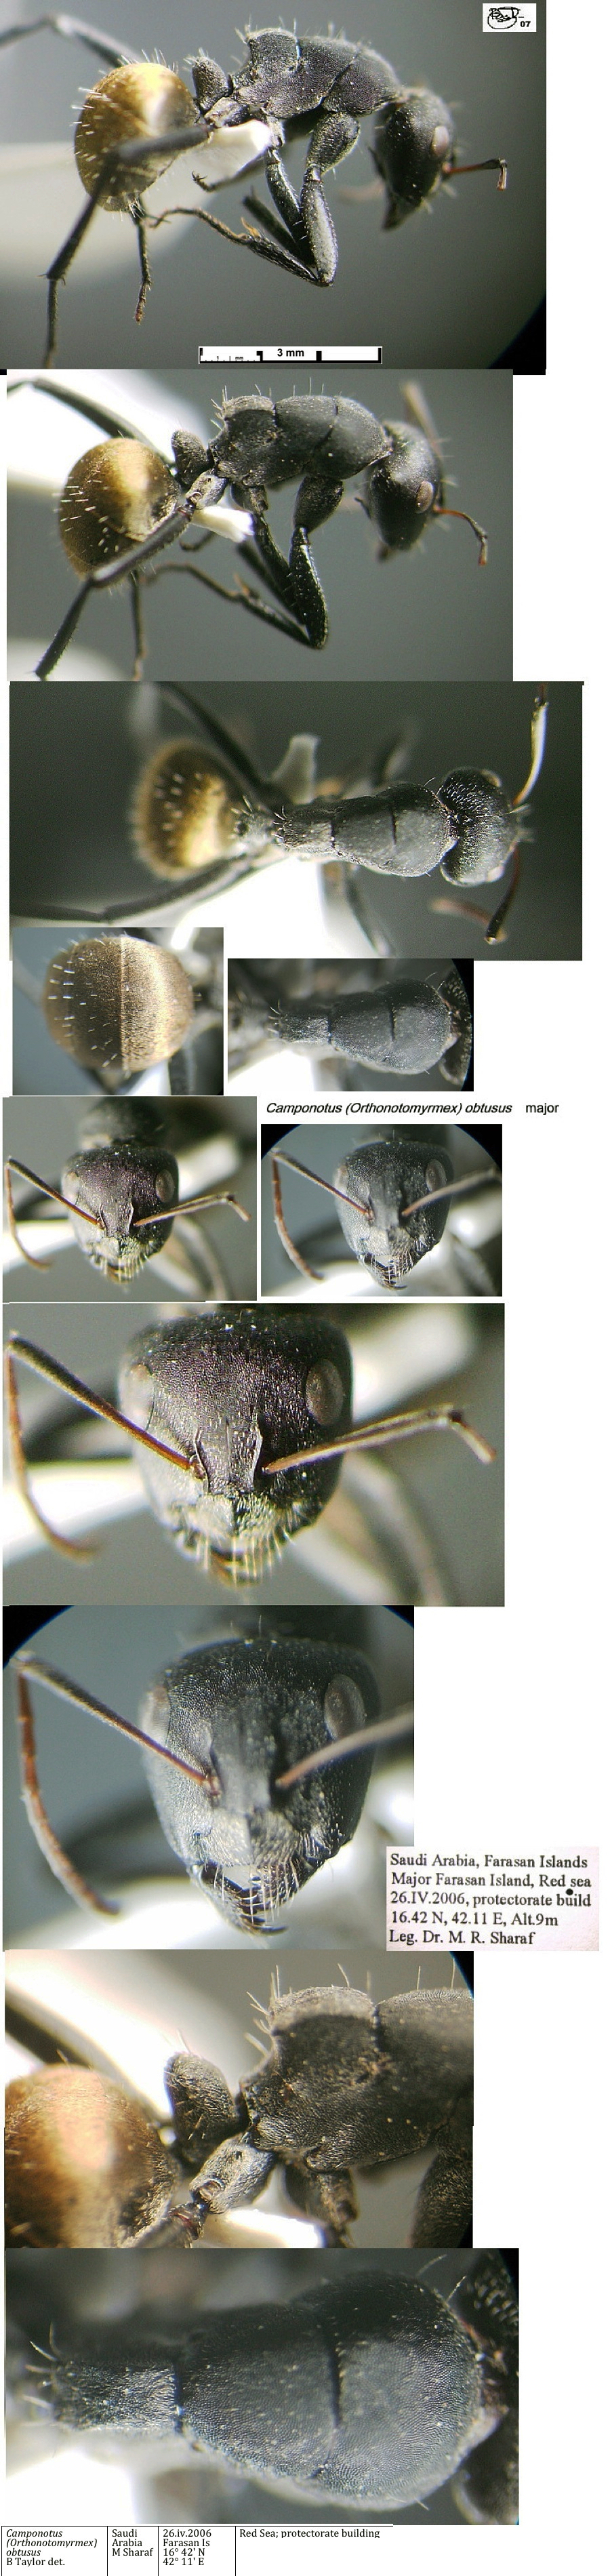 {Camponotus obtusus major}